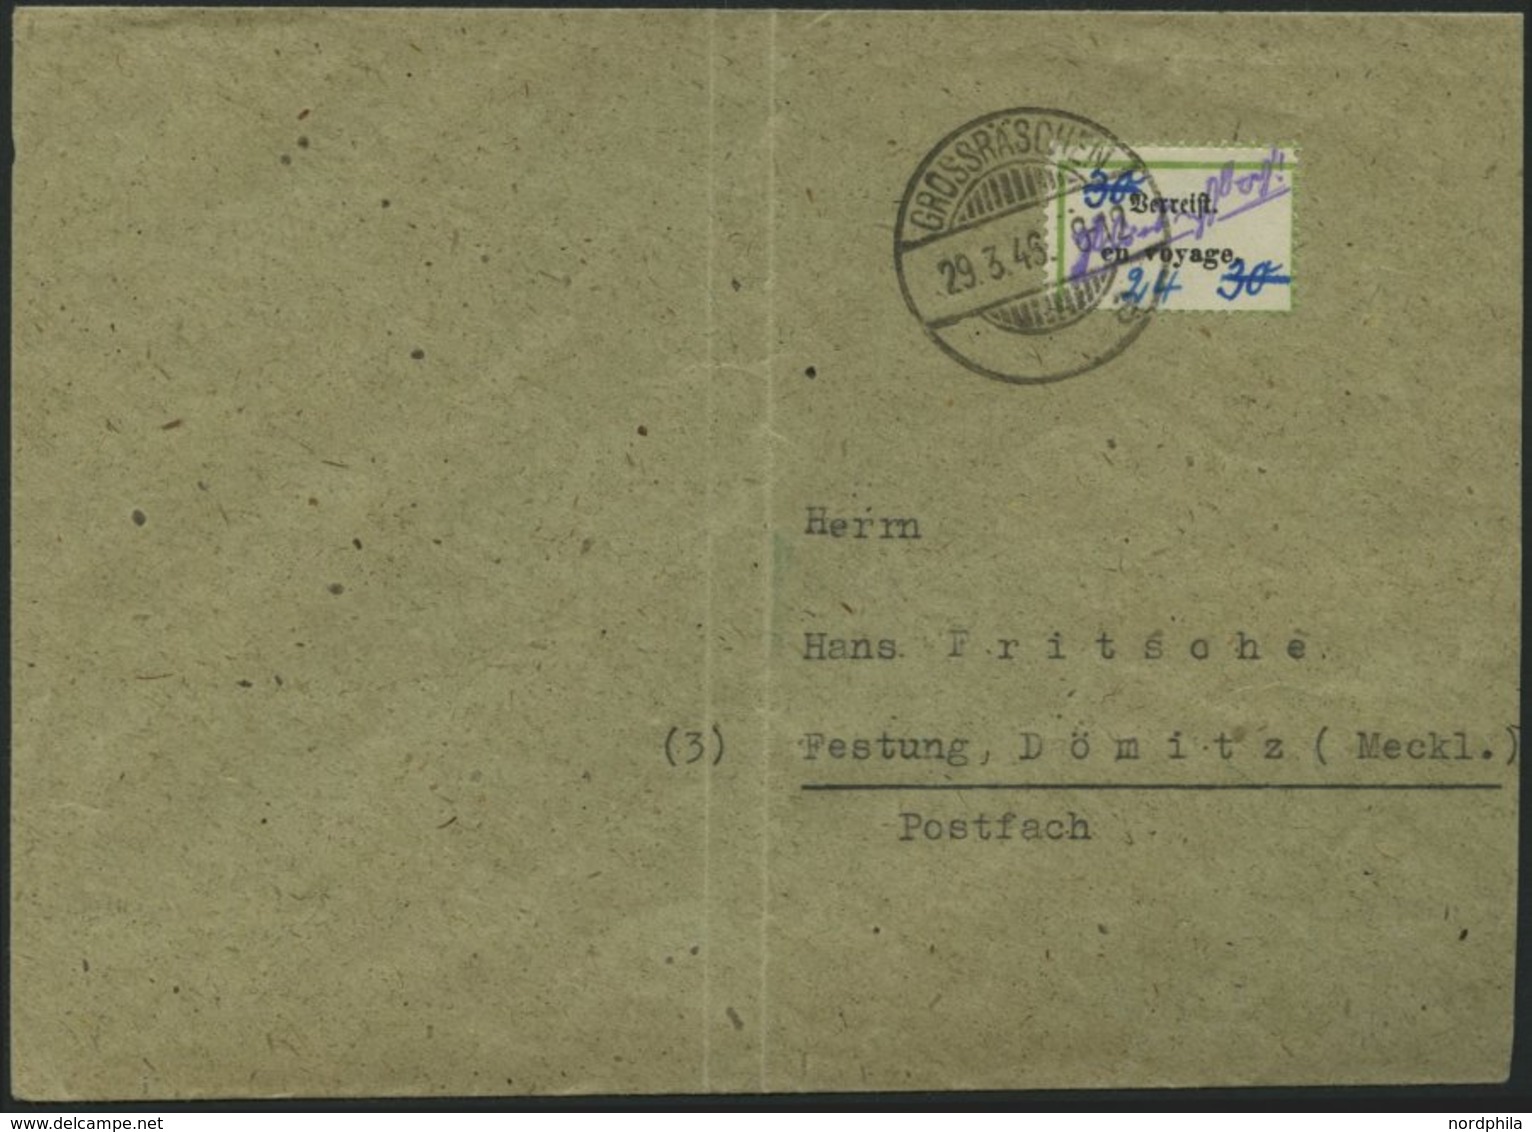 GROSSRÄSCHEN-VORLÄUFER V 18 BRIEF, 1946, 24 Auf 30 Pf. Verreist, Brief Senkrecht Gefaltet, Marke Pracht, Gepr. Zierer, M - Private & Local Mails